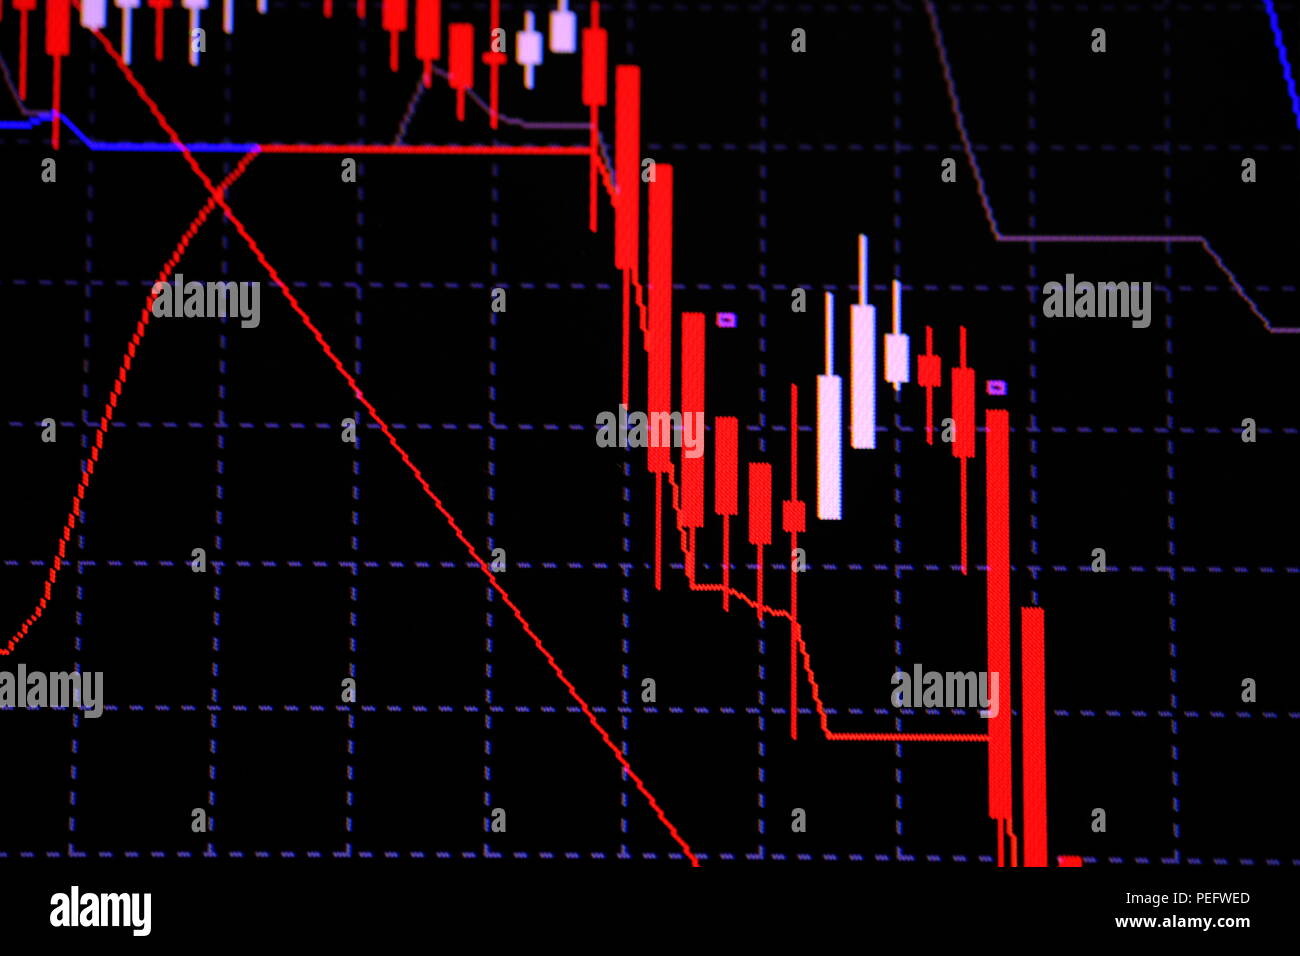 Candle stick con indicador gráfico mostrando punto alcista o bajista, punto  arriba o abajo tendencia tendencia del precio del mercado de valores o bolsa  trad Fotografía de stock - Alamy